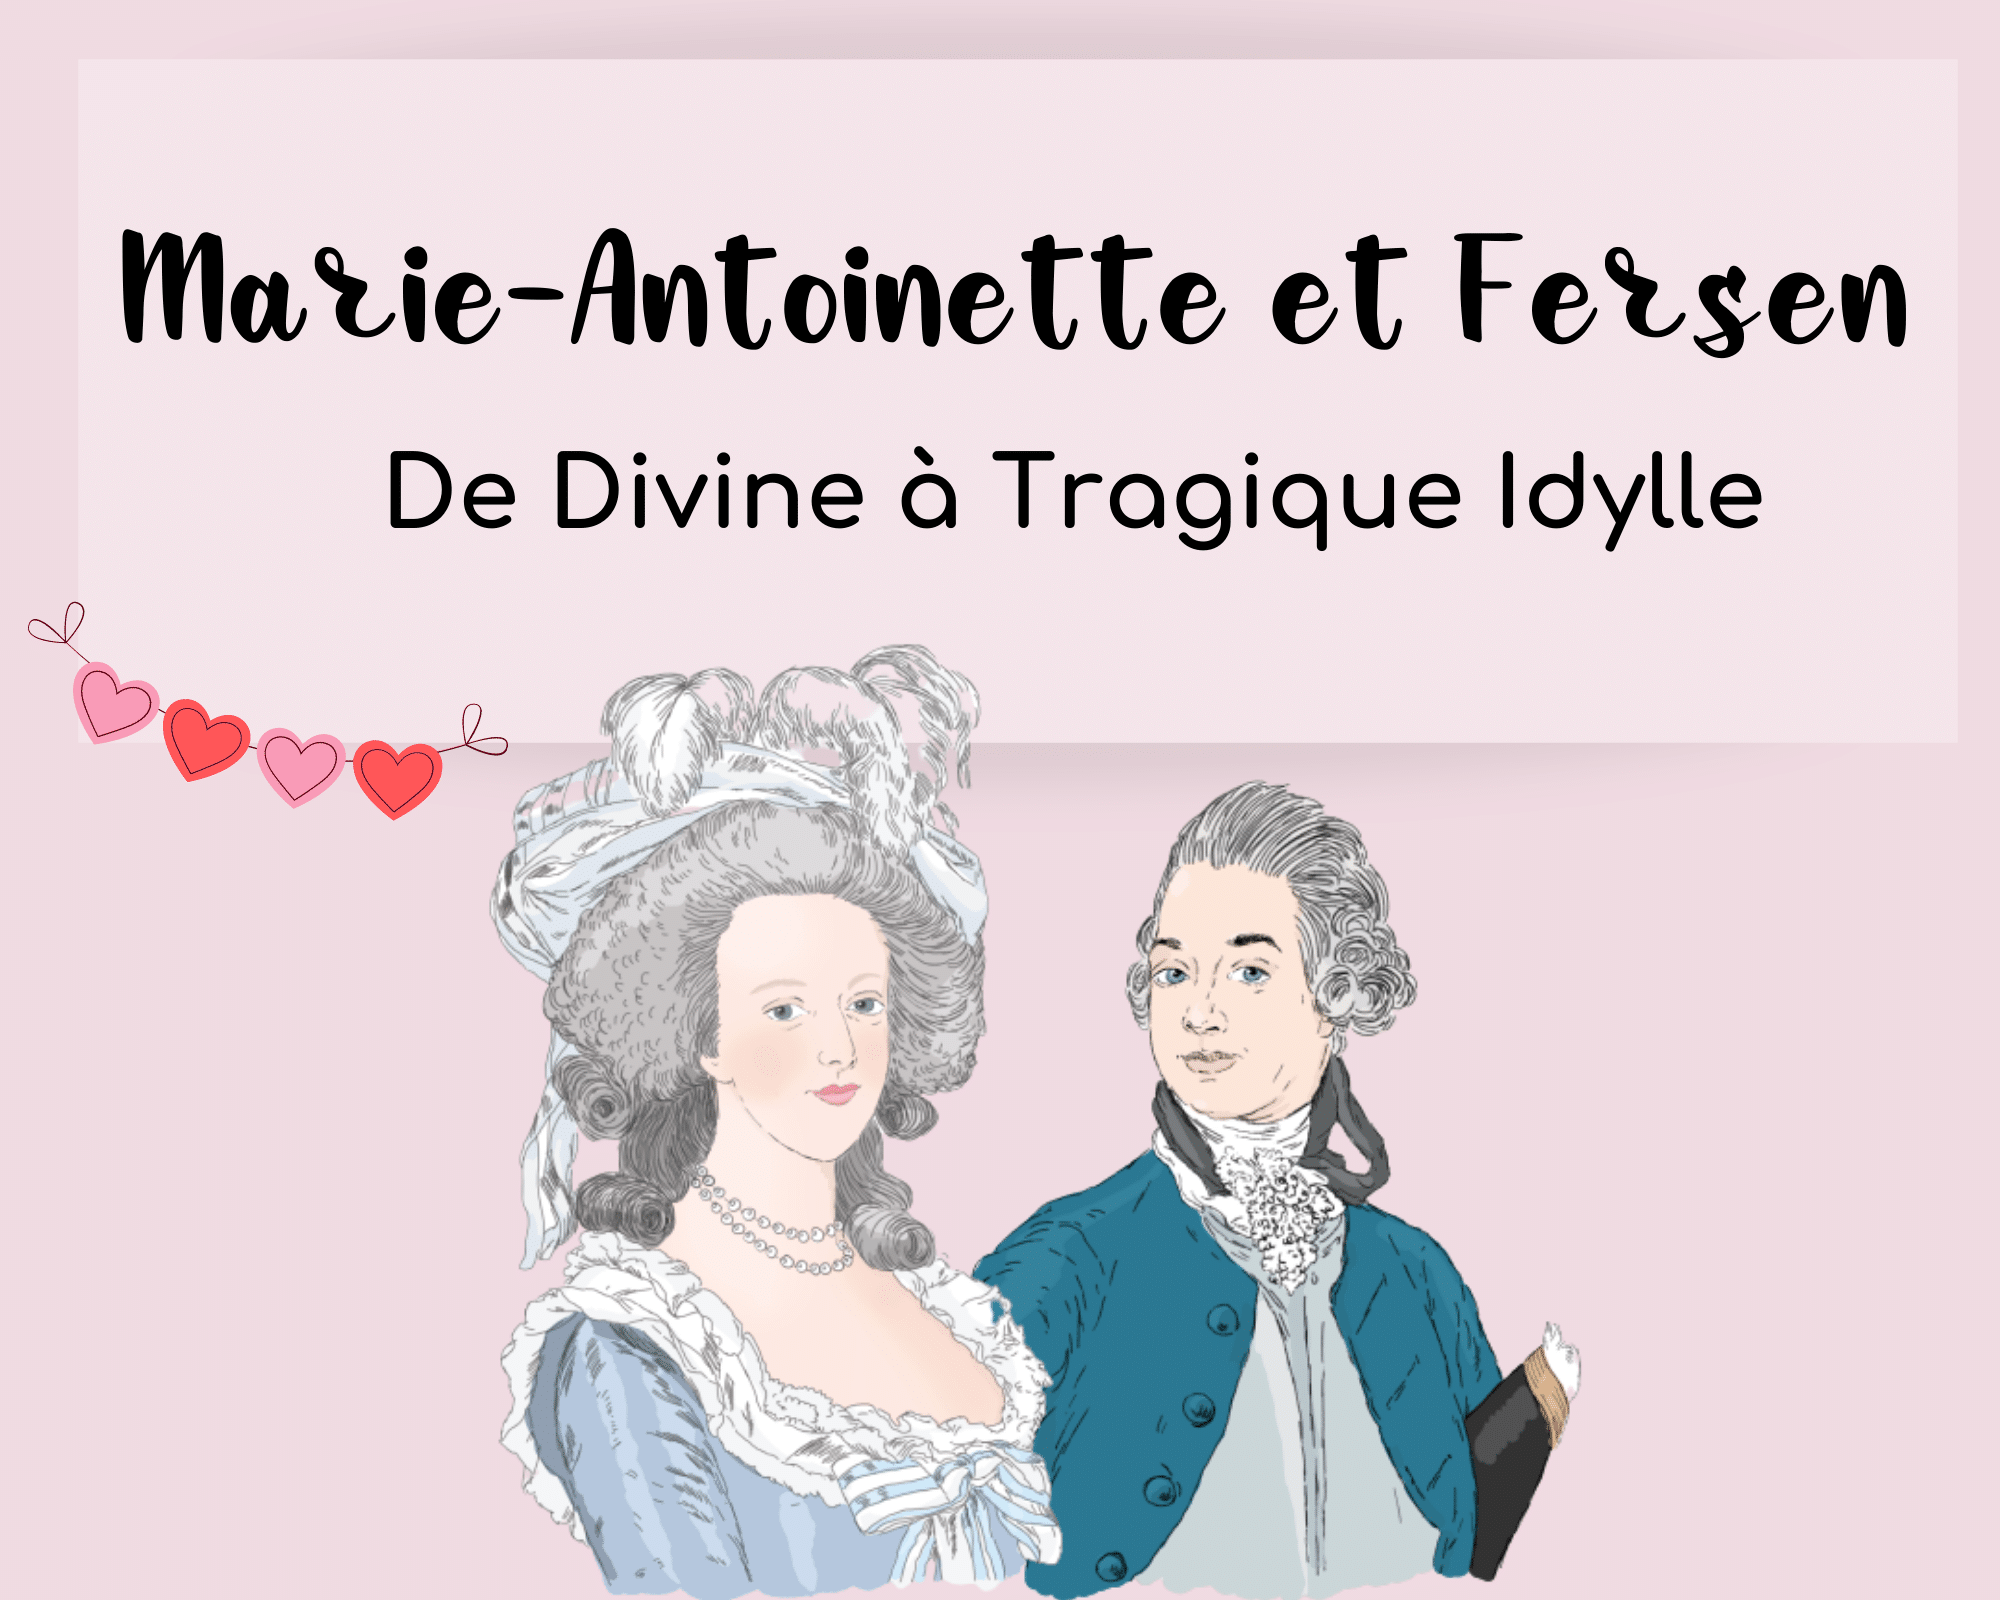 Marie-Antoinette et Fersen : une divine idylle qui tourne au tragique